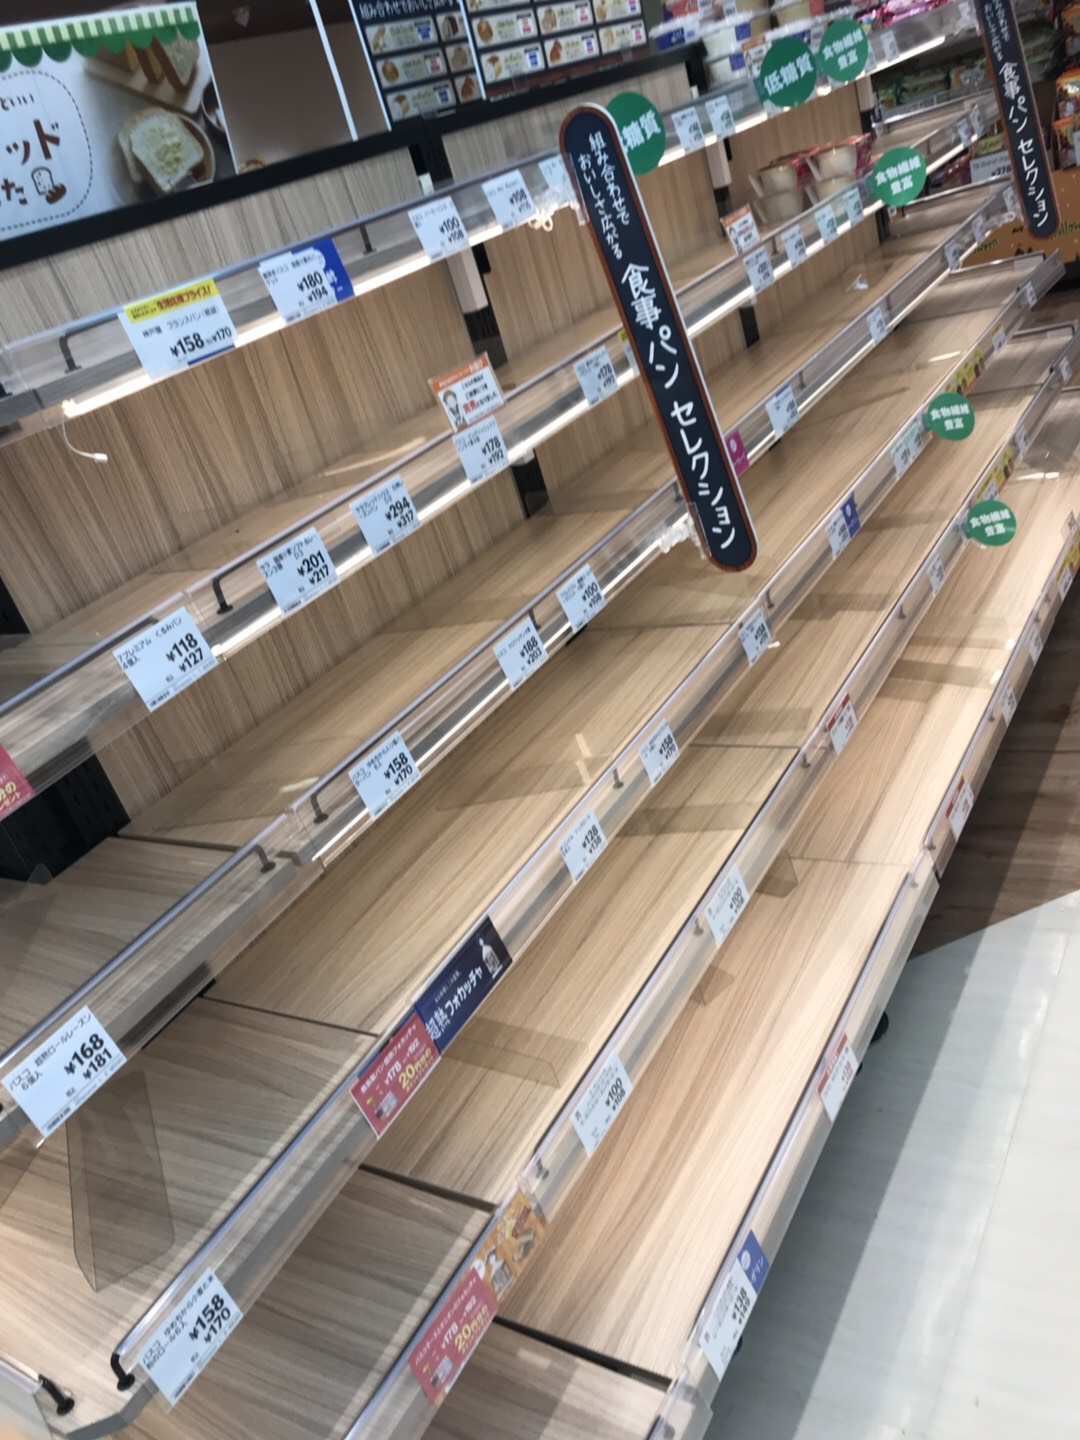 强台风海贝思来袭 ..超市被抢购一空